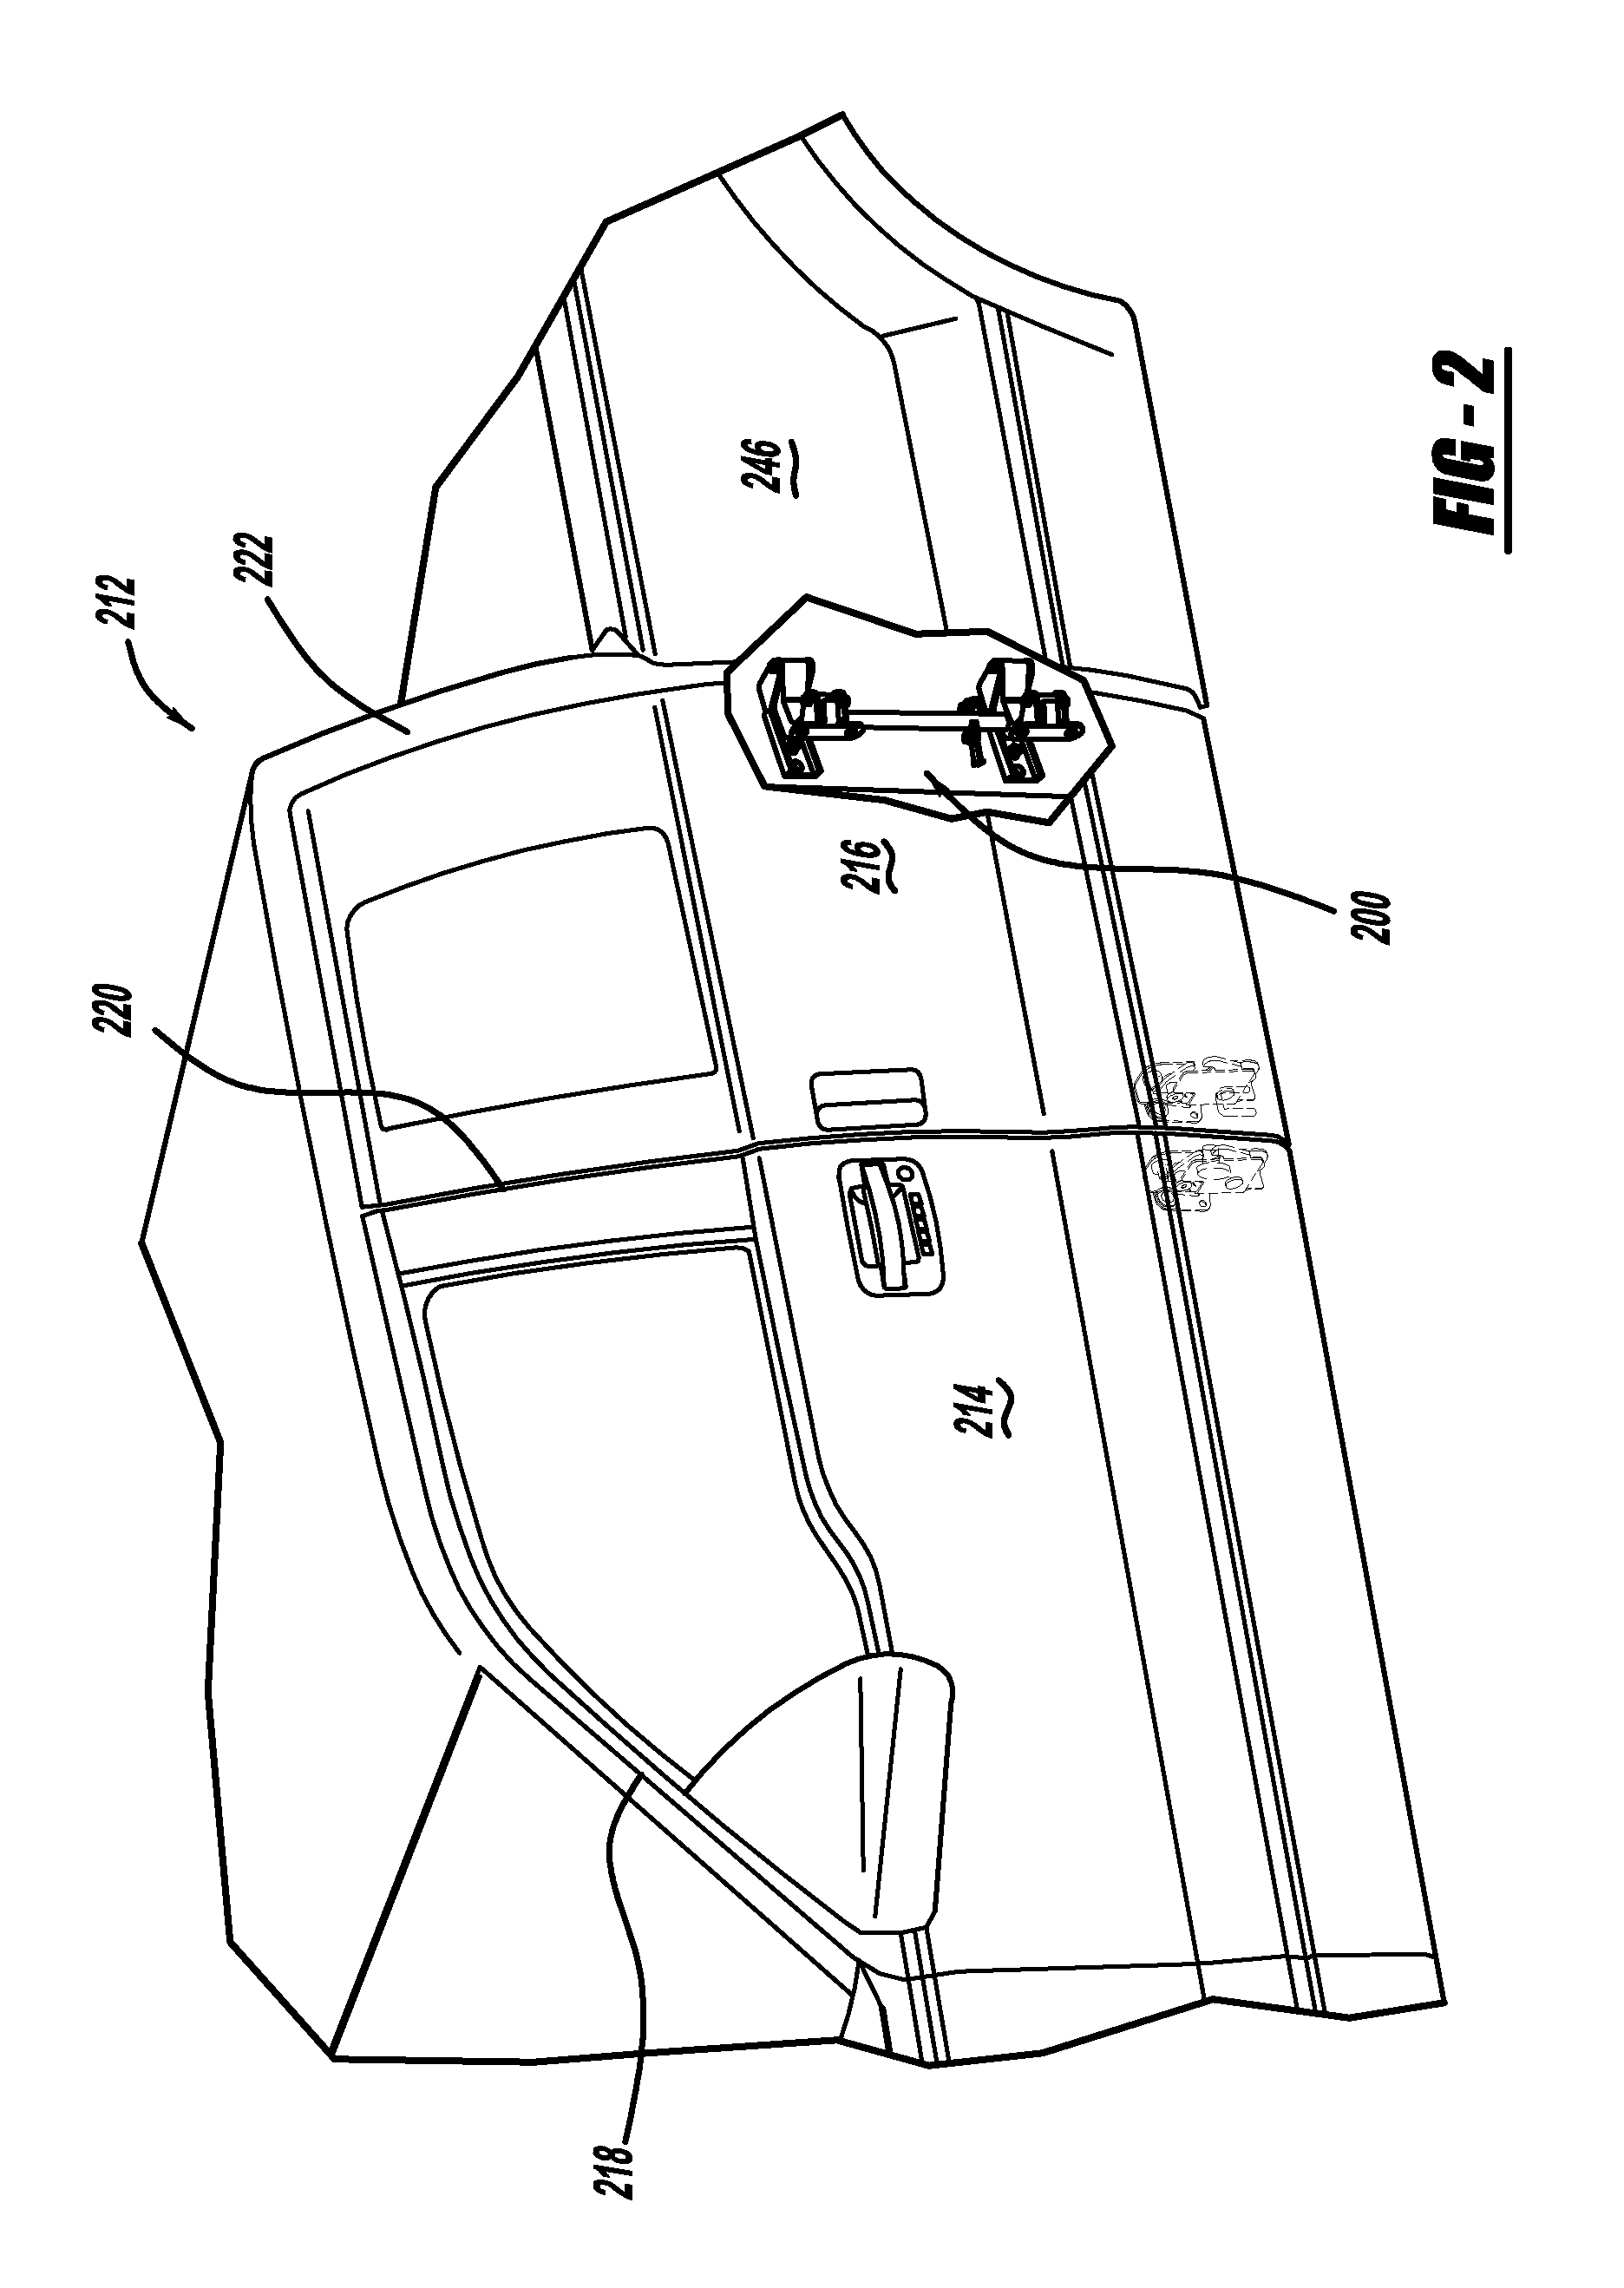 Vehicle rear door articulating mechanism